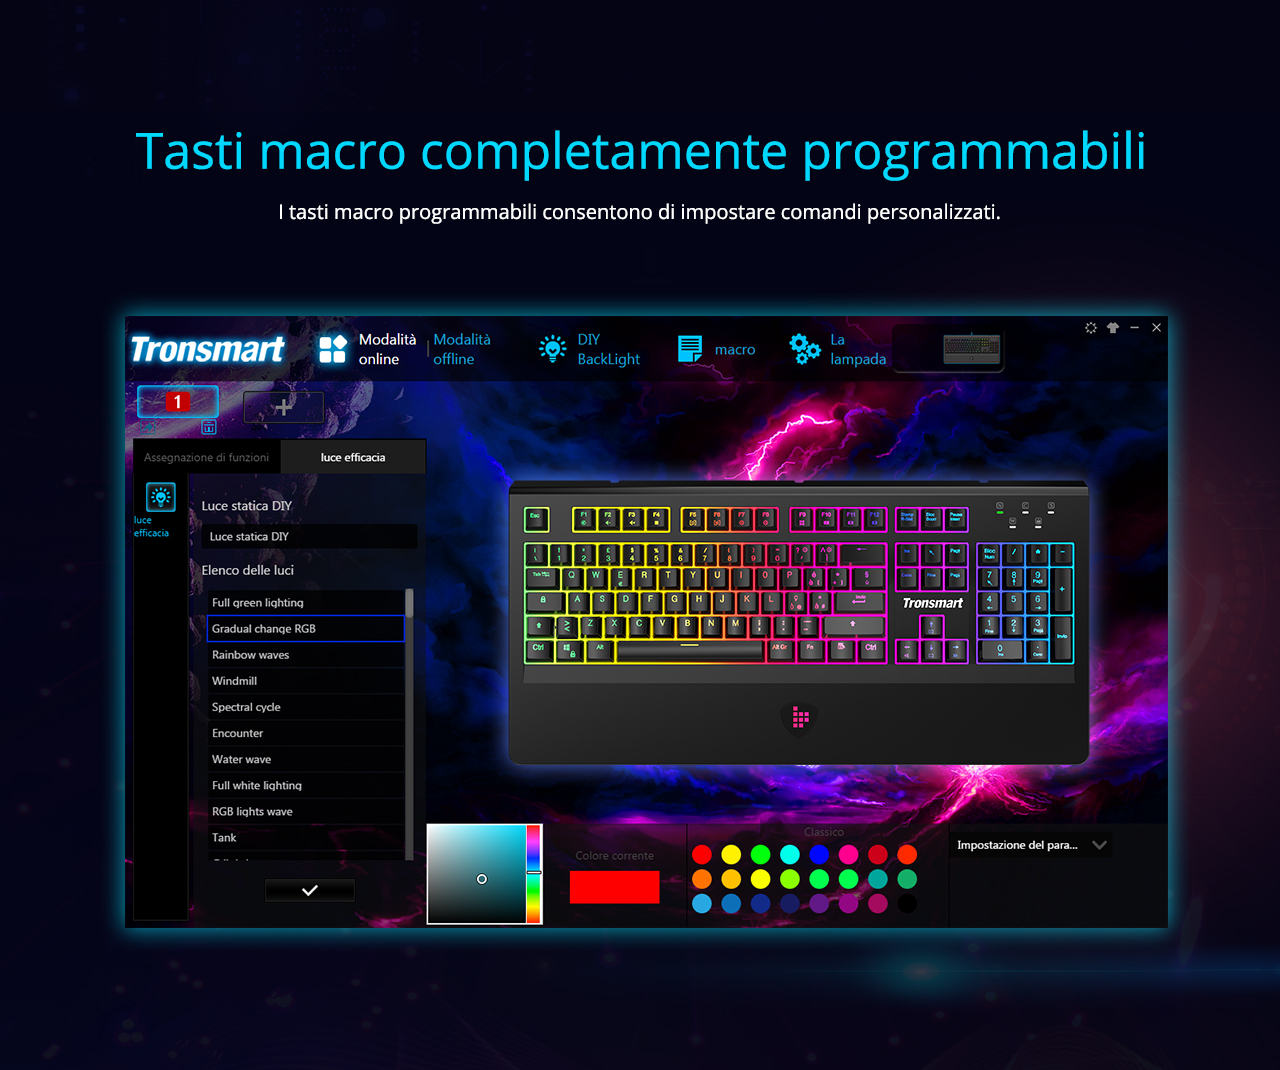 Tronsmart TK09R لوحة مفاتيح الألعاب الميكانيكية مع مفاتيح RGB Backlght الماكرو مفاتيح زرقاء للاعبين - تخطيط تكنولوجيا المعلومات